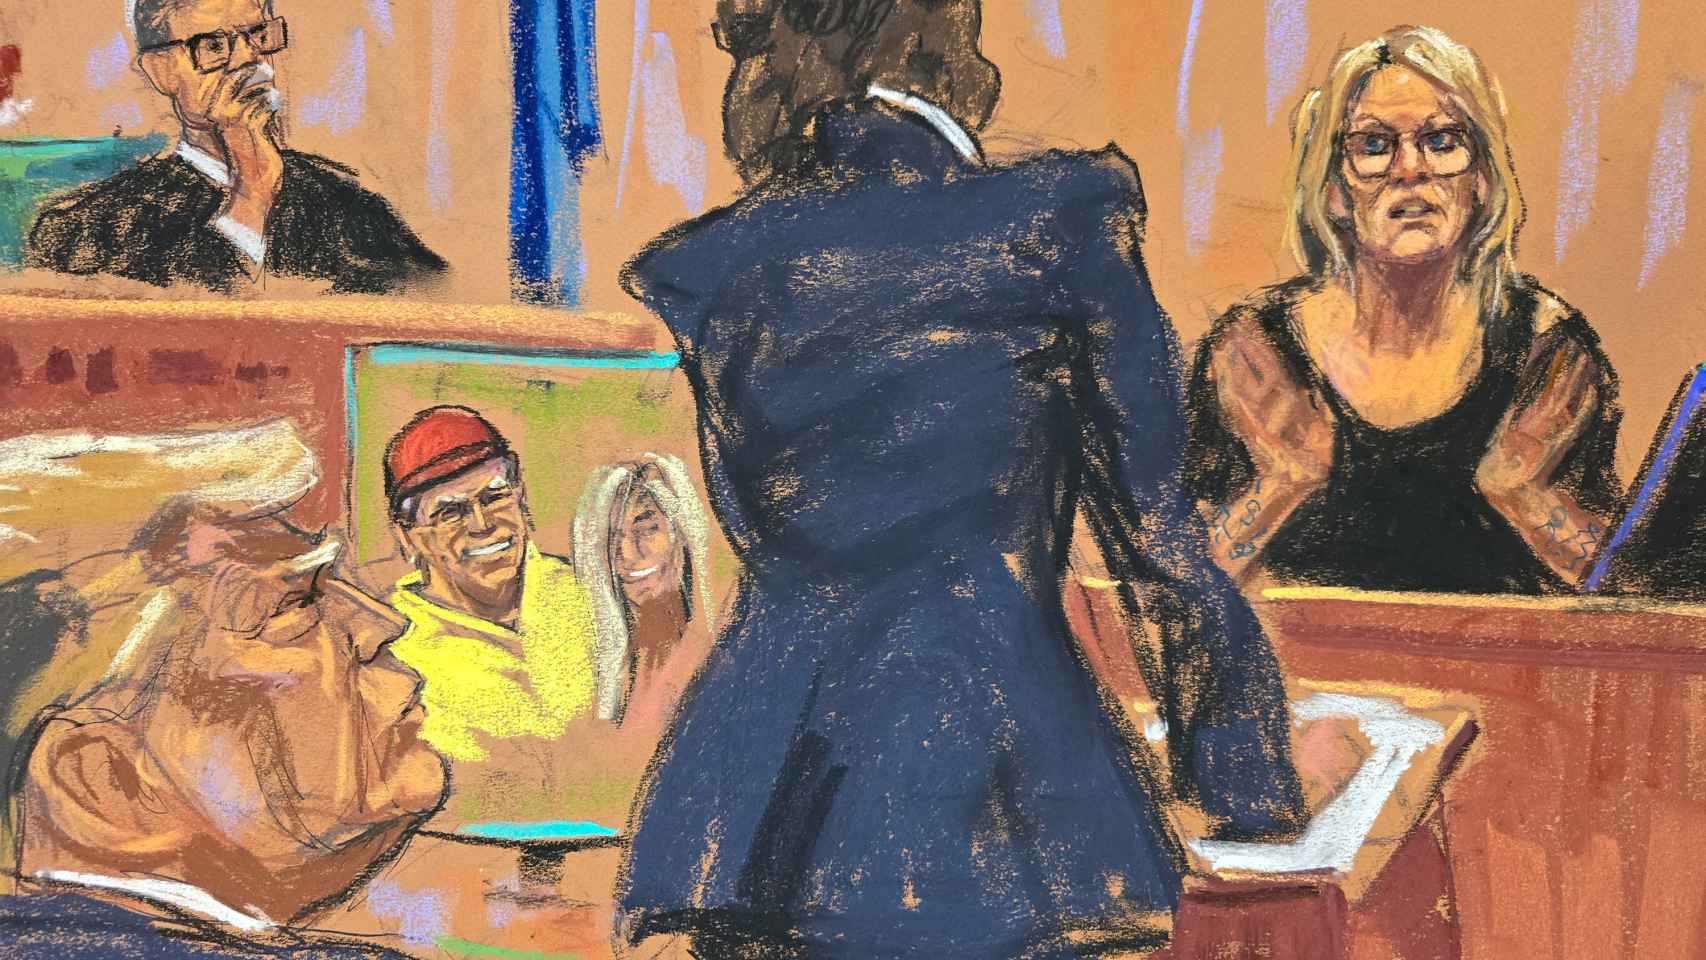 Dibujo de la actriz porno Stormy Daniels declarando en el juicio contra Trump.